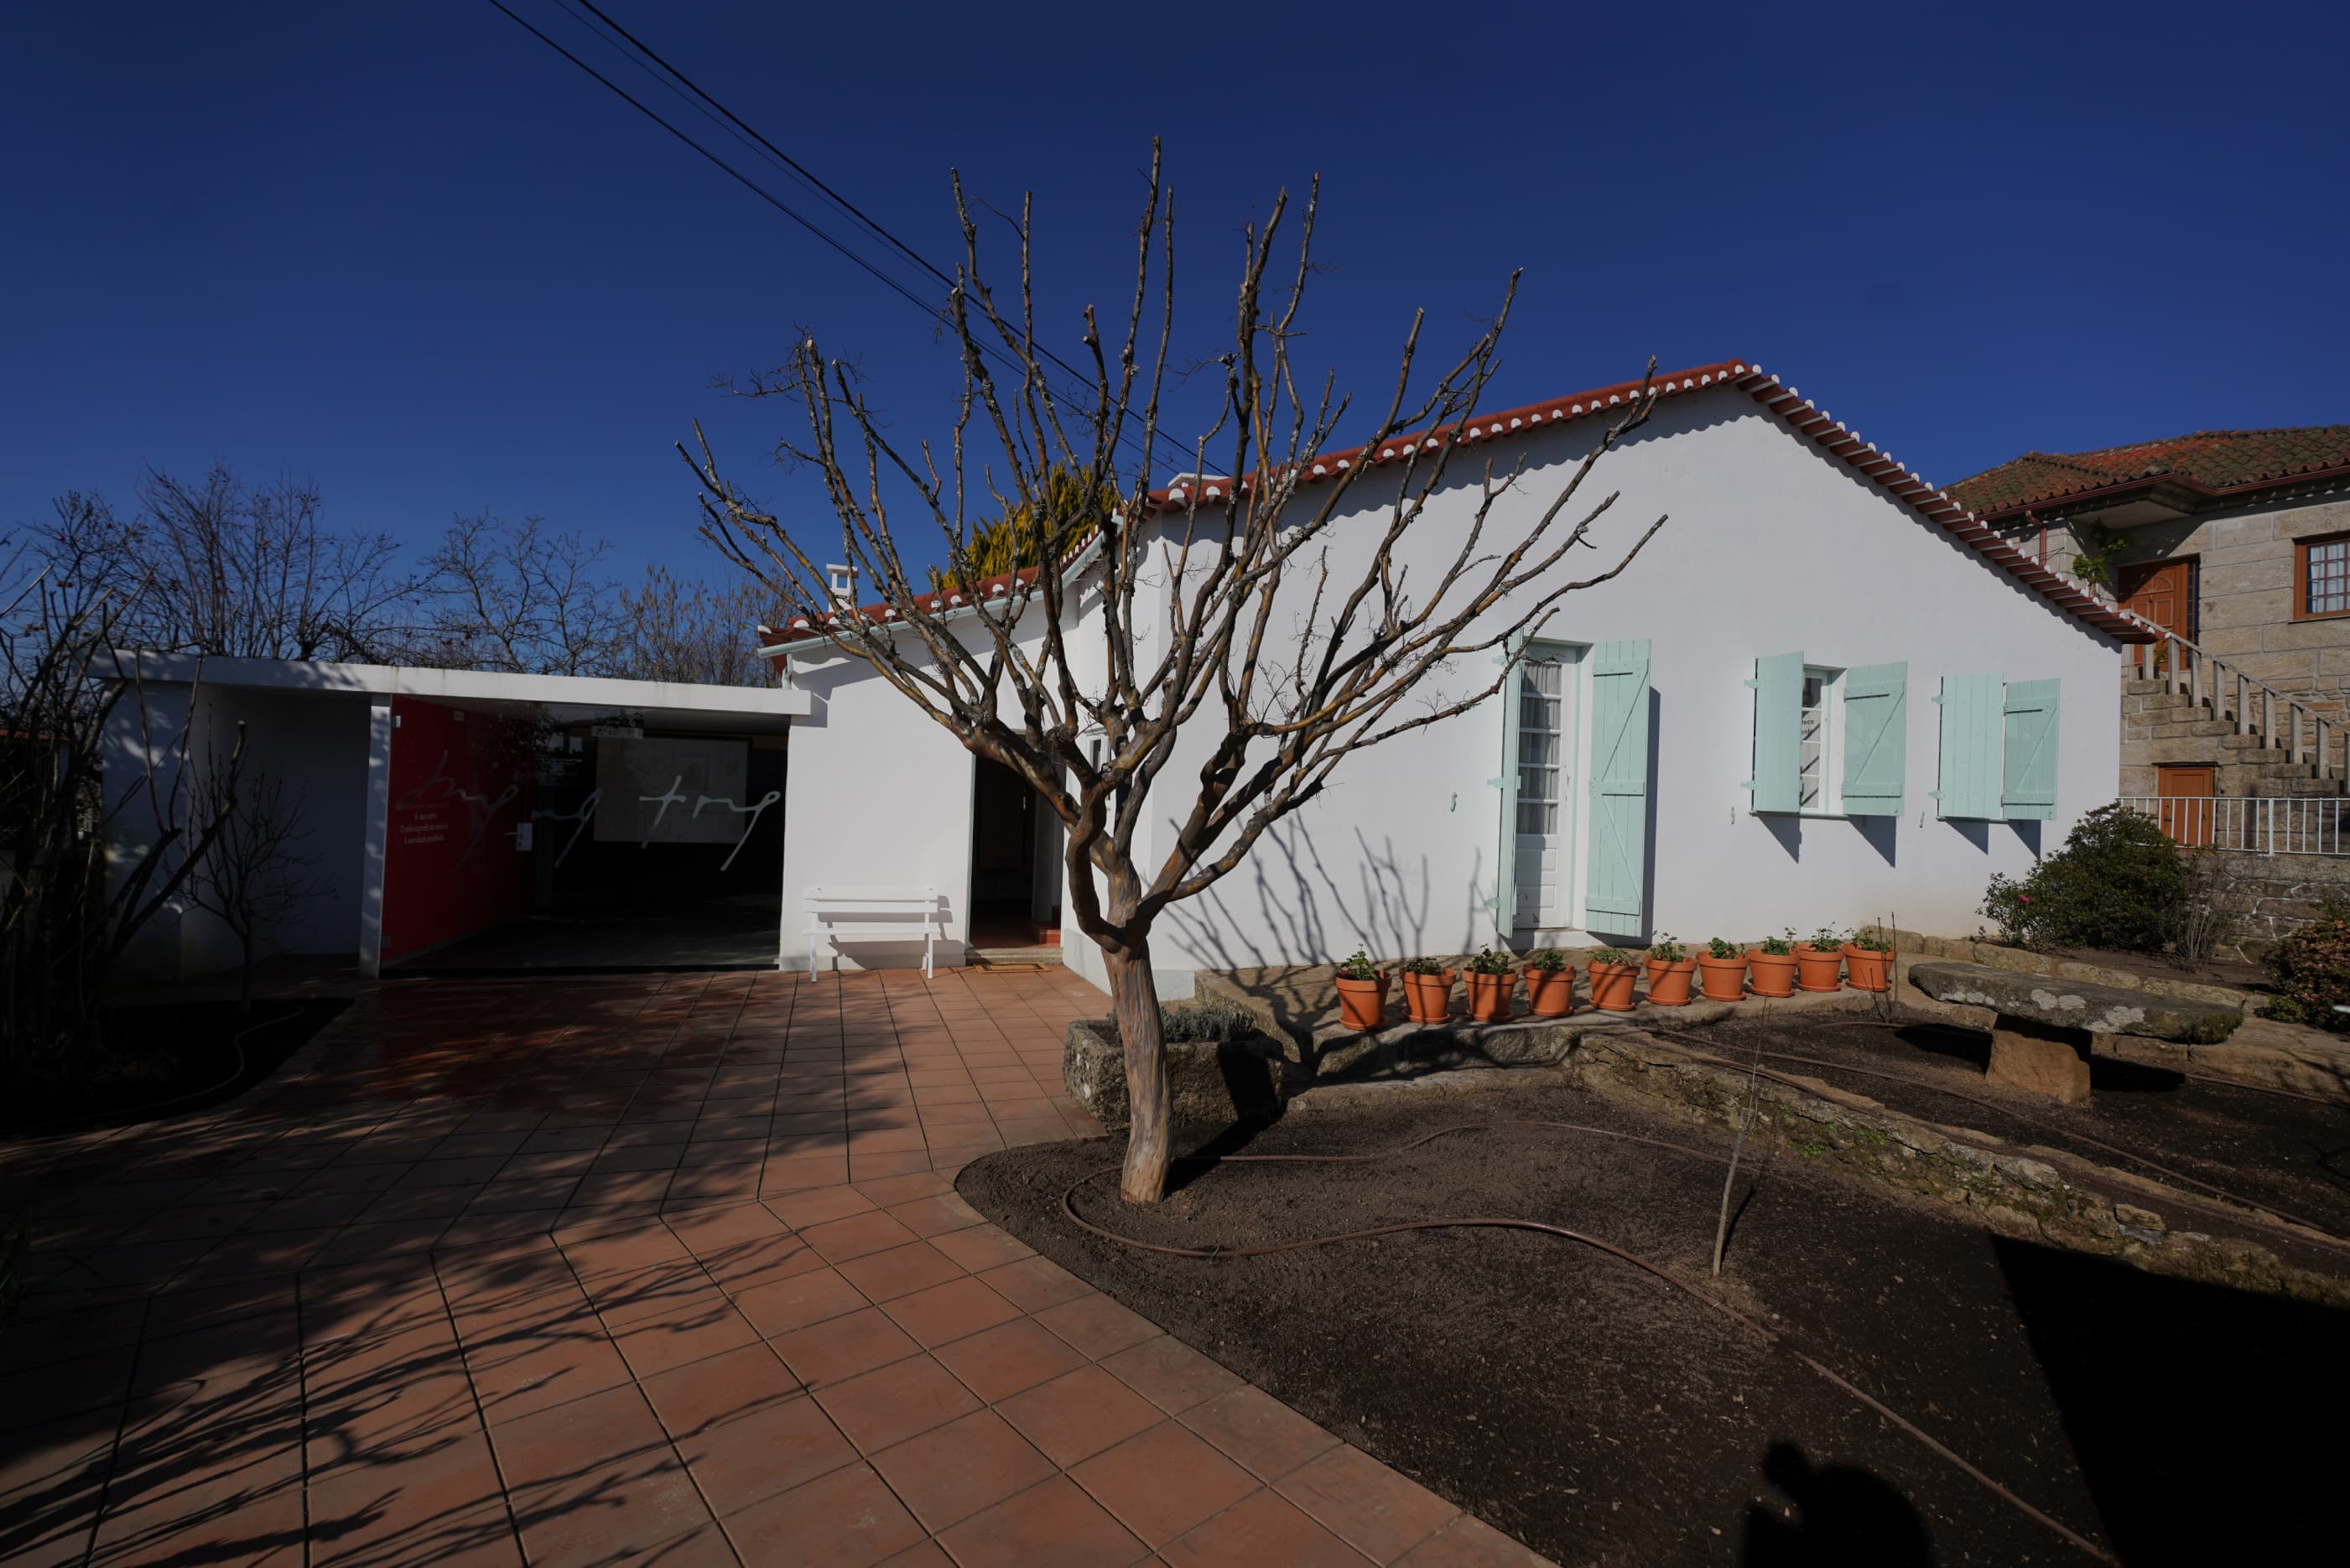 Fotografia do exterior da Casa Miguel Torga após o processo de reabilitação e musealização